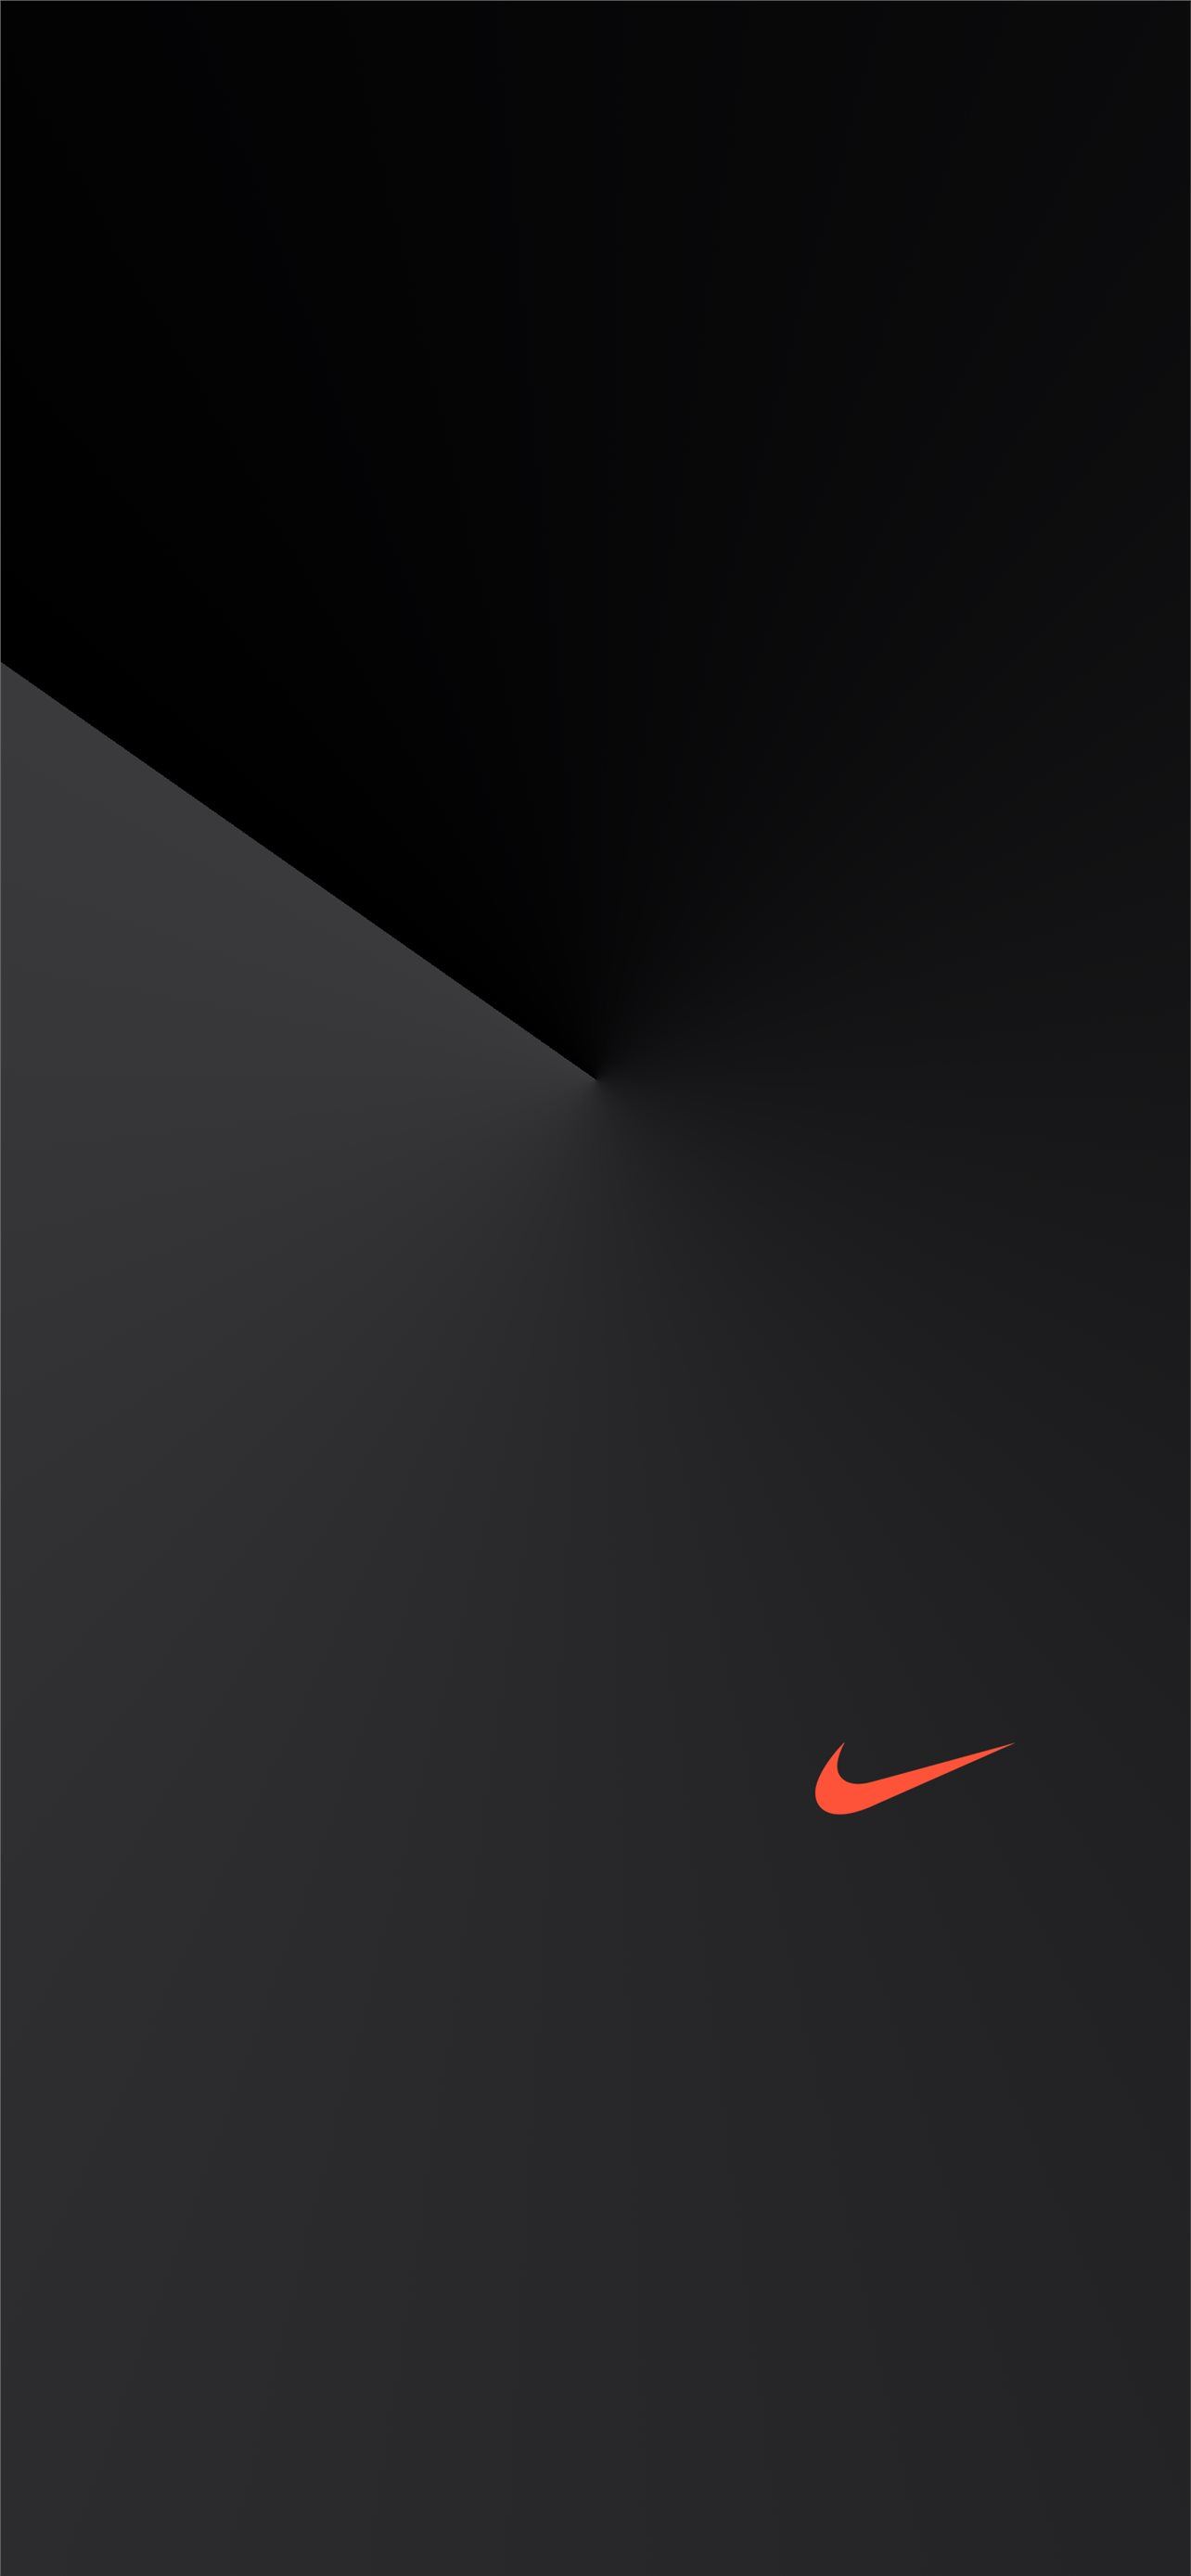 Khi màn hình nền của bạn quá sáng và chói, hãy chọn ngay hình nền Nike tối cho iPhone của bạn để tạo ra một không gian đầy bí ẩn và mạnh mẽ. Với những gam màu đen và xám huyền bí, bạn sẽ cảm thấy thư giãn hơn và tập trung hơn khi sử dụng điện thoại.